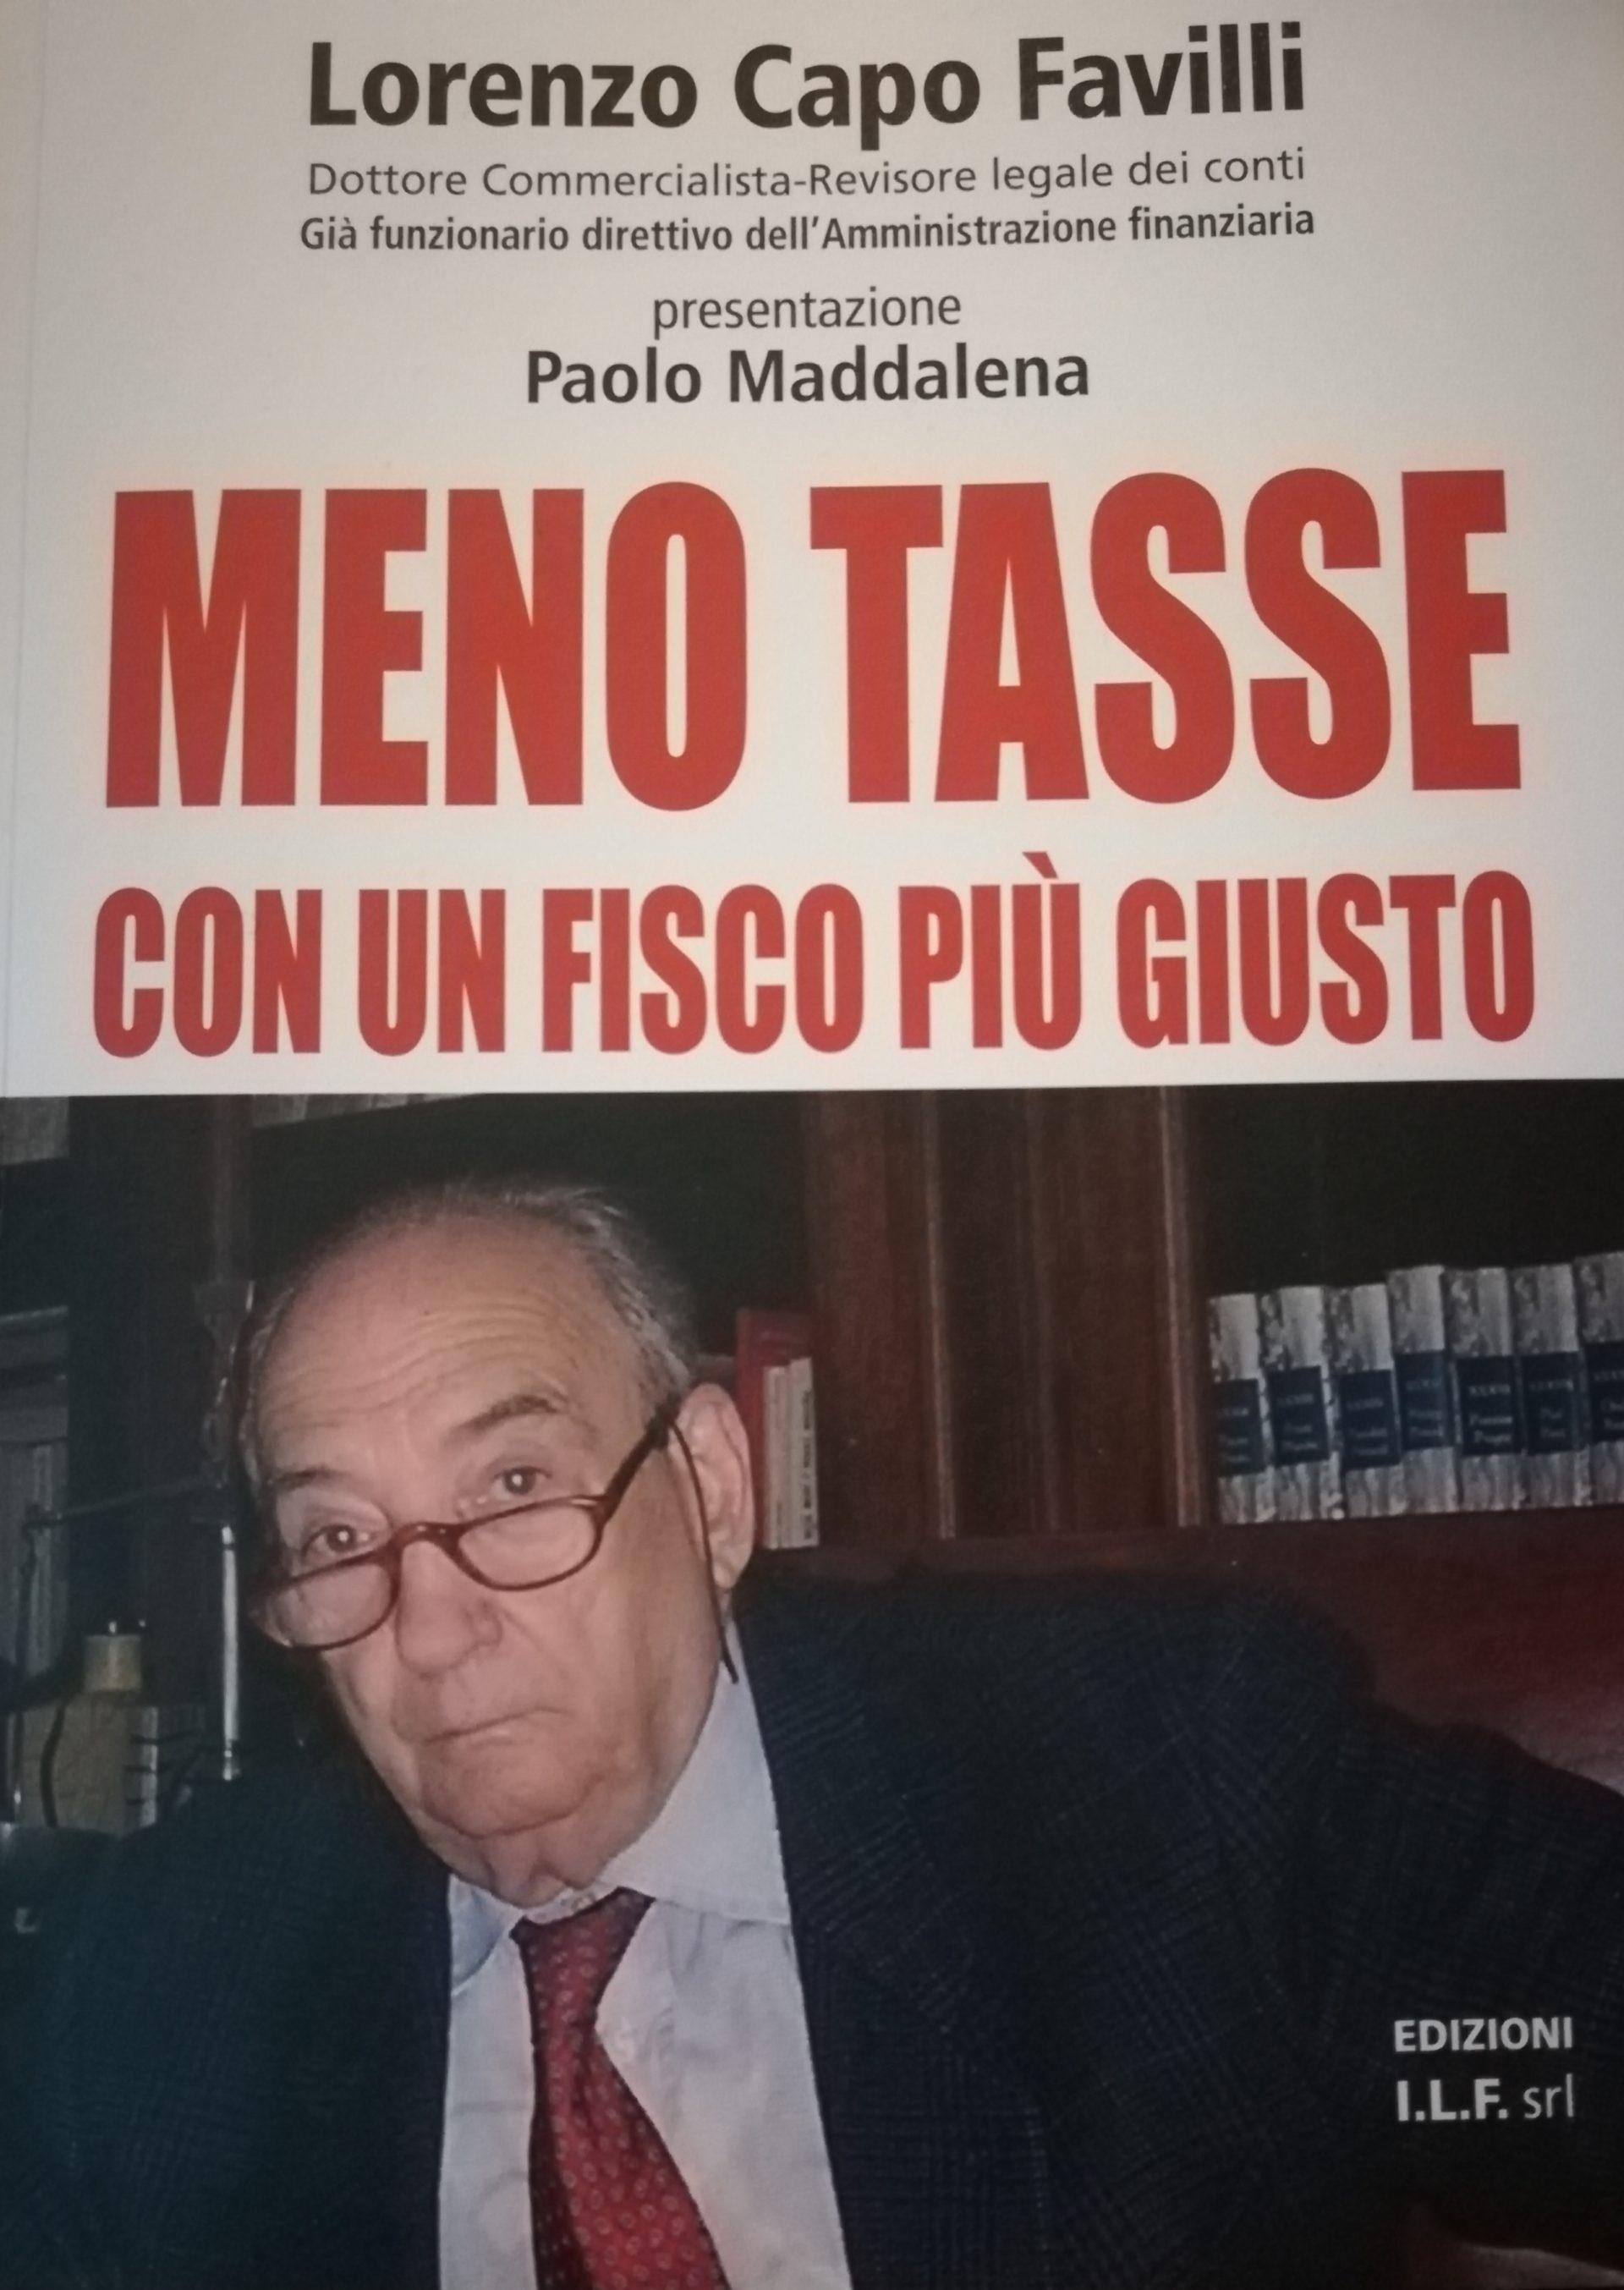 Addio a Lorenzo Capo Favilli, autore del libro:“Meno tasse per un fisco più giusto”